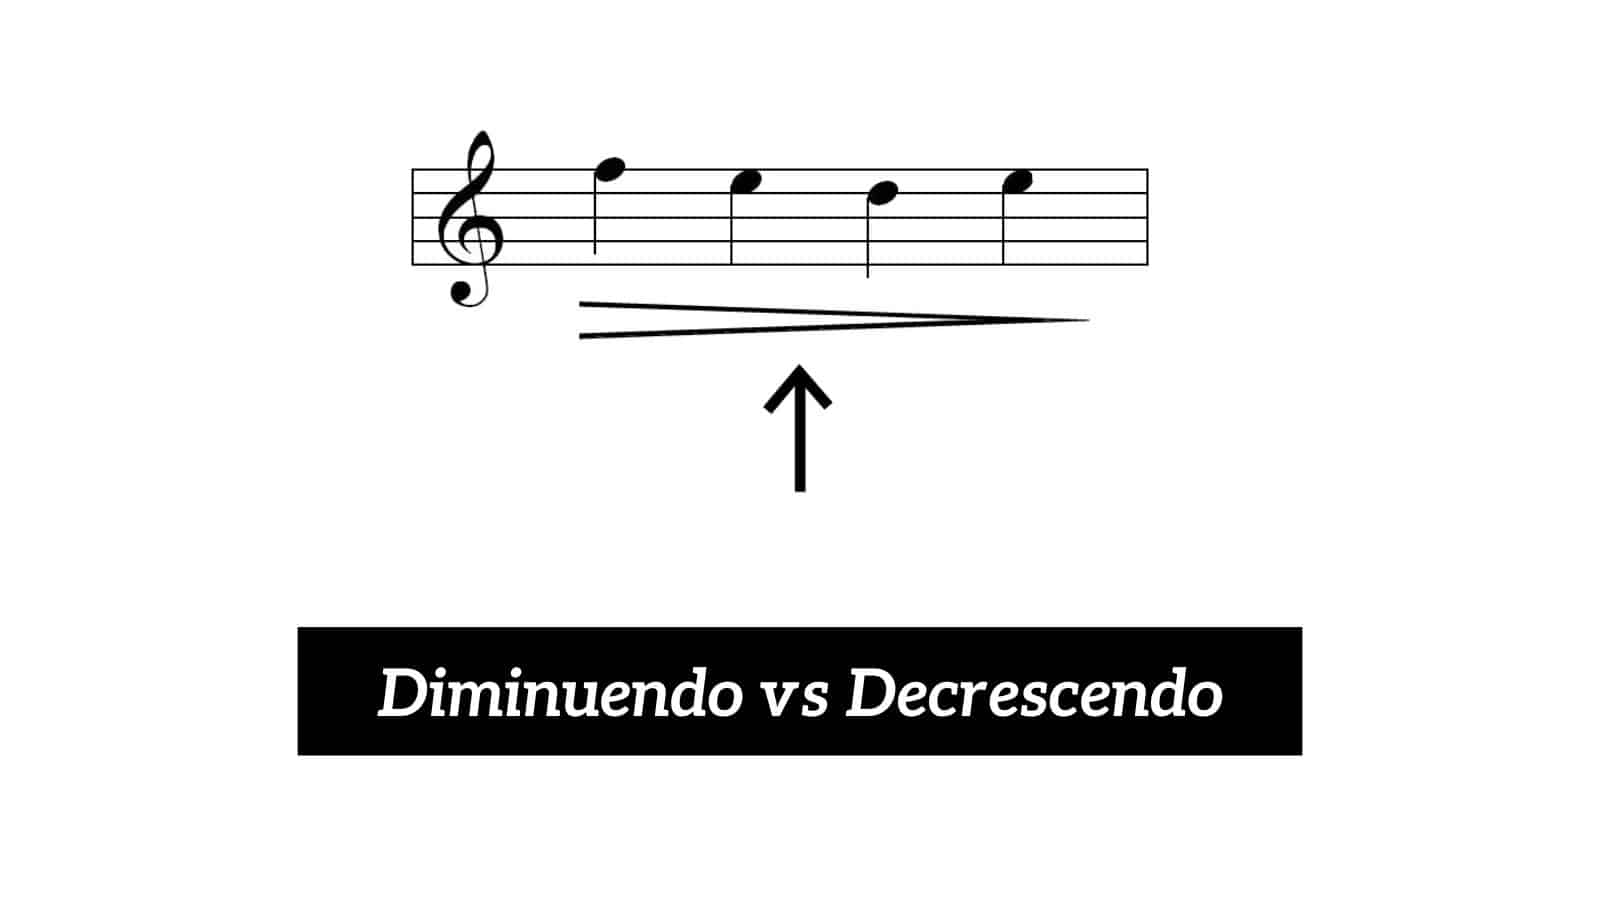 Diminuendo vs Decrescendo